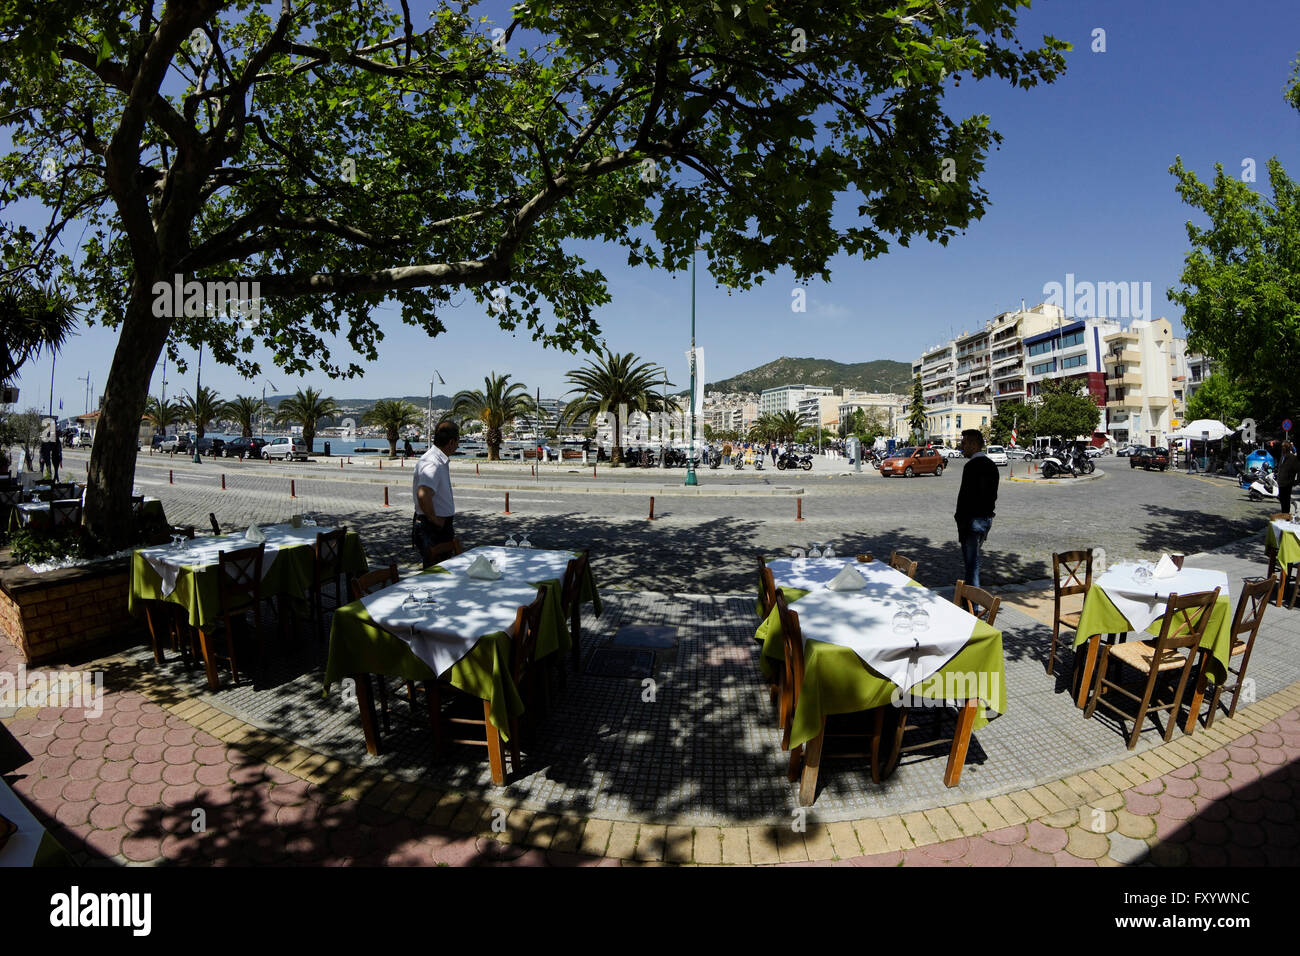 Restaurant grec rangées de tables vides alignés, sur le trottoir ombragé de Panagia, district de la ville de Kavala, Grèce waterfront port Banque D'Images